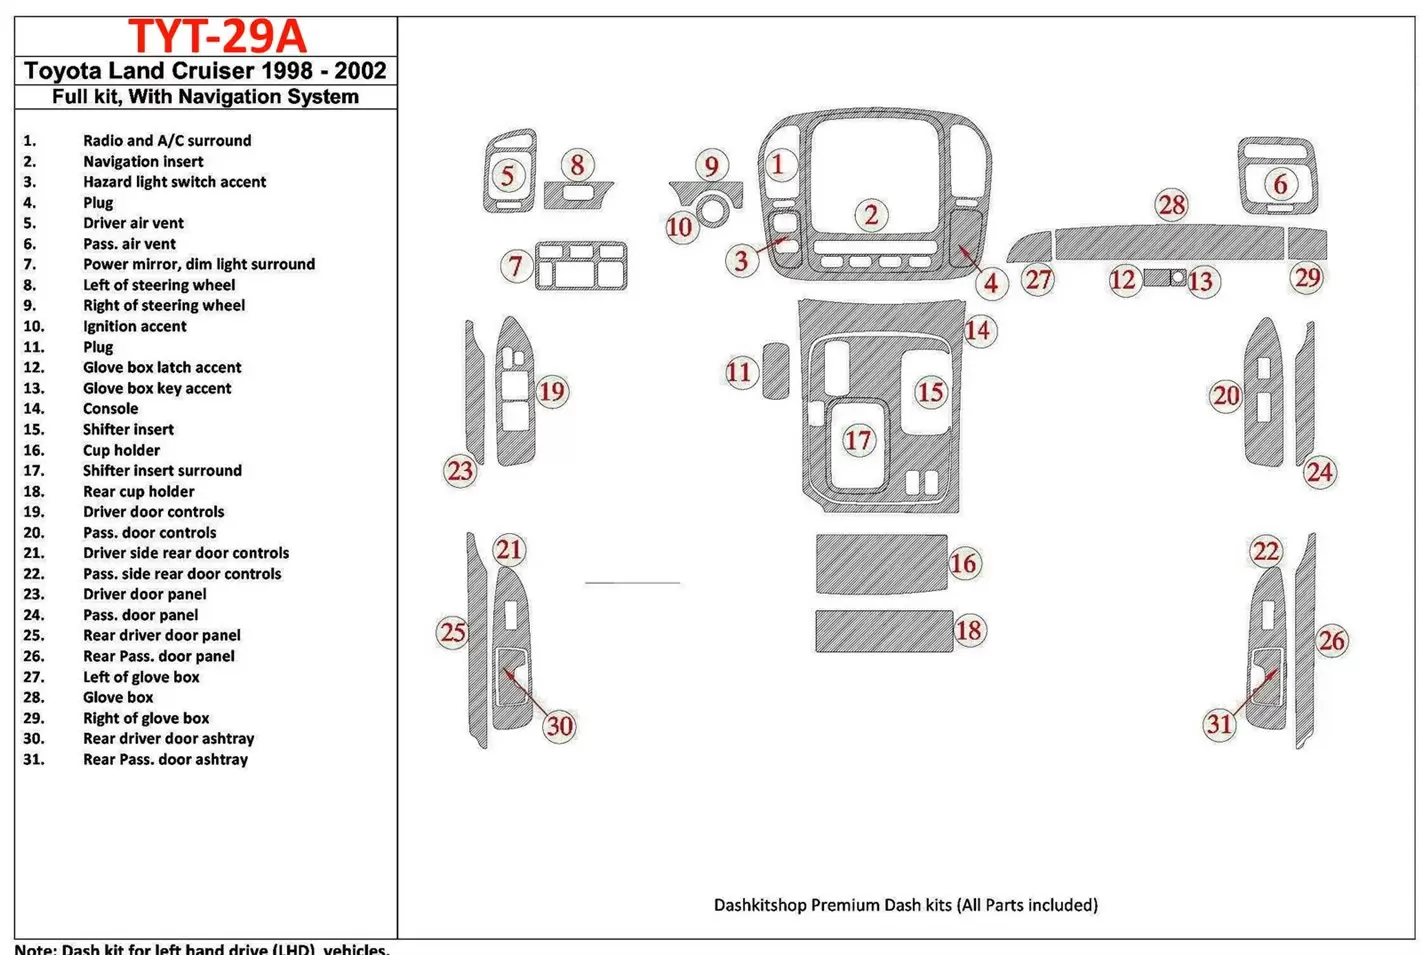 Toyota Land Cruiser 1998-2002 Avec NAVI, 31 Parts set BD Kit la décoration du tableau de bord - 2 - habillage decor de tableau d